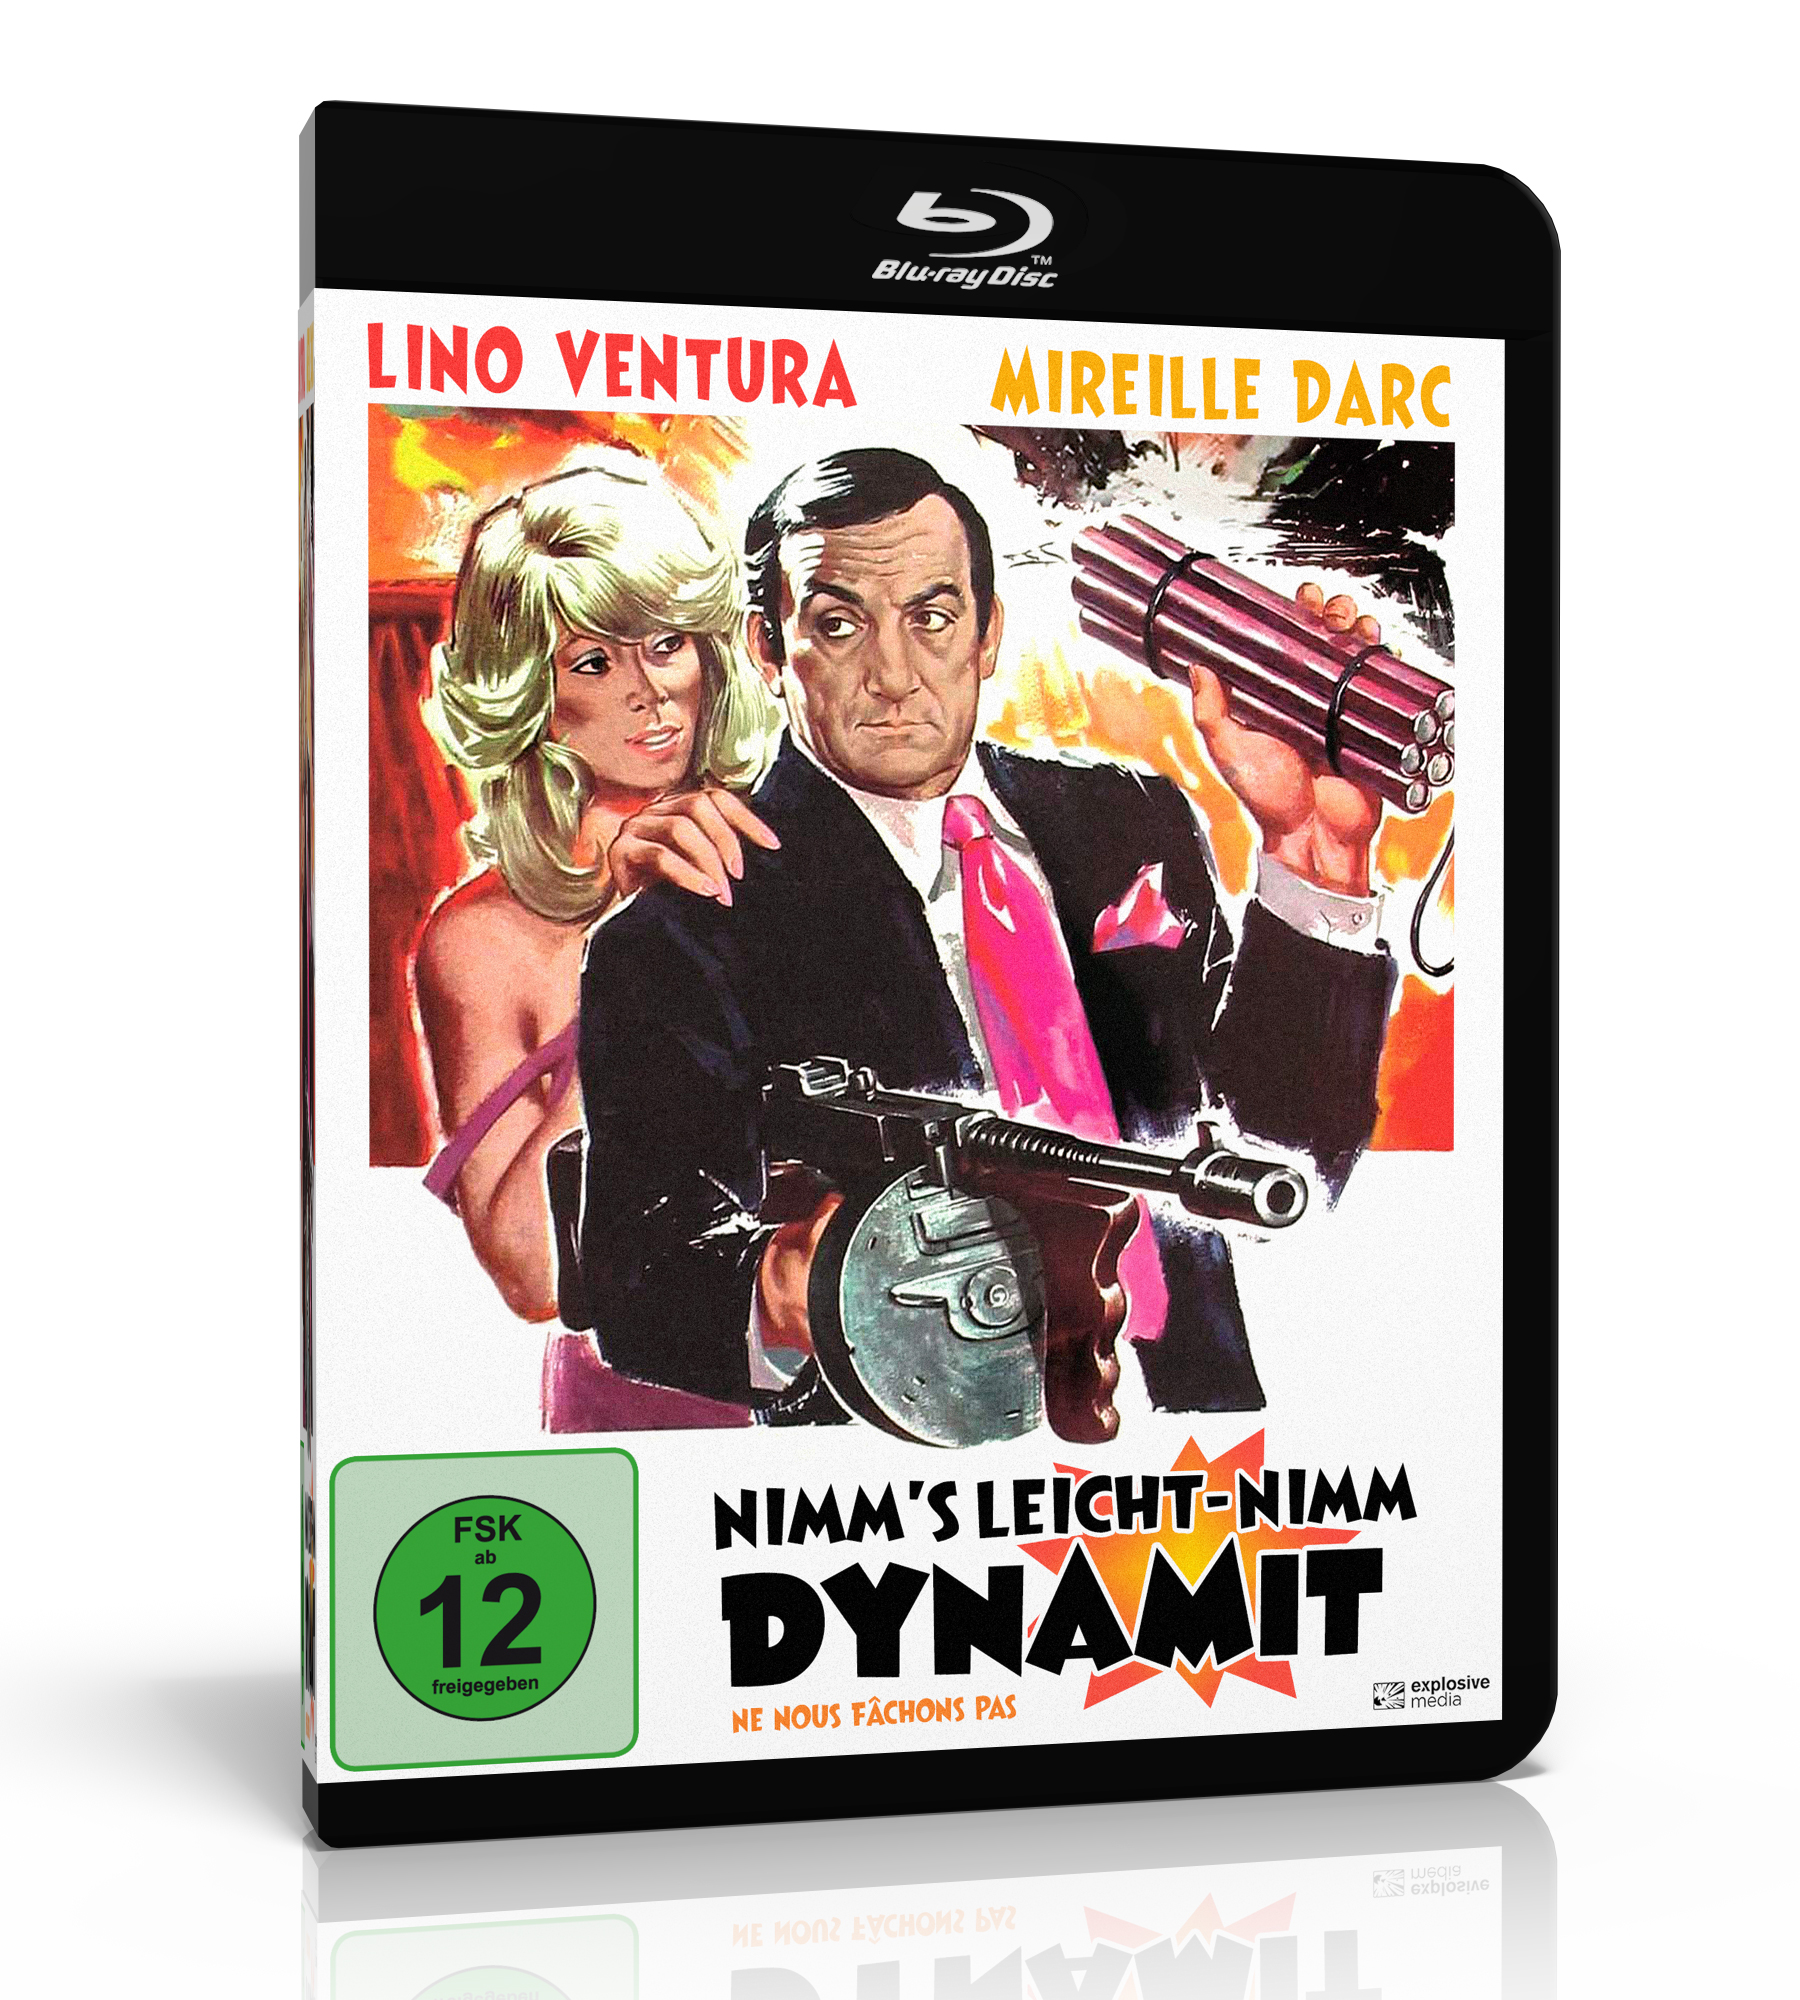 Das Cover der Blu-ray zu Nimm's leicht - nimm Dynamit zeigt ein gezeichnetes Poster, auf dem Hauptdarsteller Lino Ventura als Antoine Beretto mit Dynamit und Maschinenpistole in den Händen. Mireille Darc als Églantine Michalon langt ihm von hinten auf die Schulter.